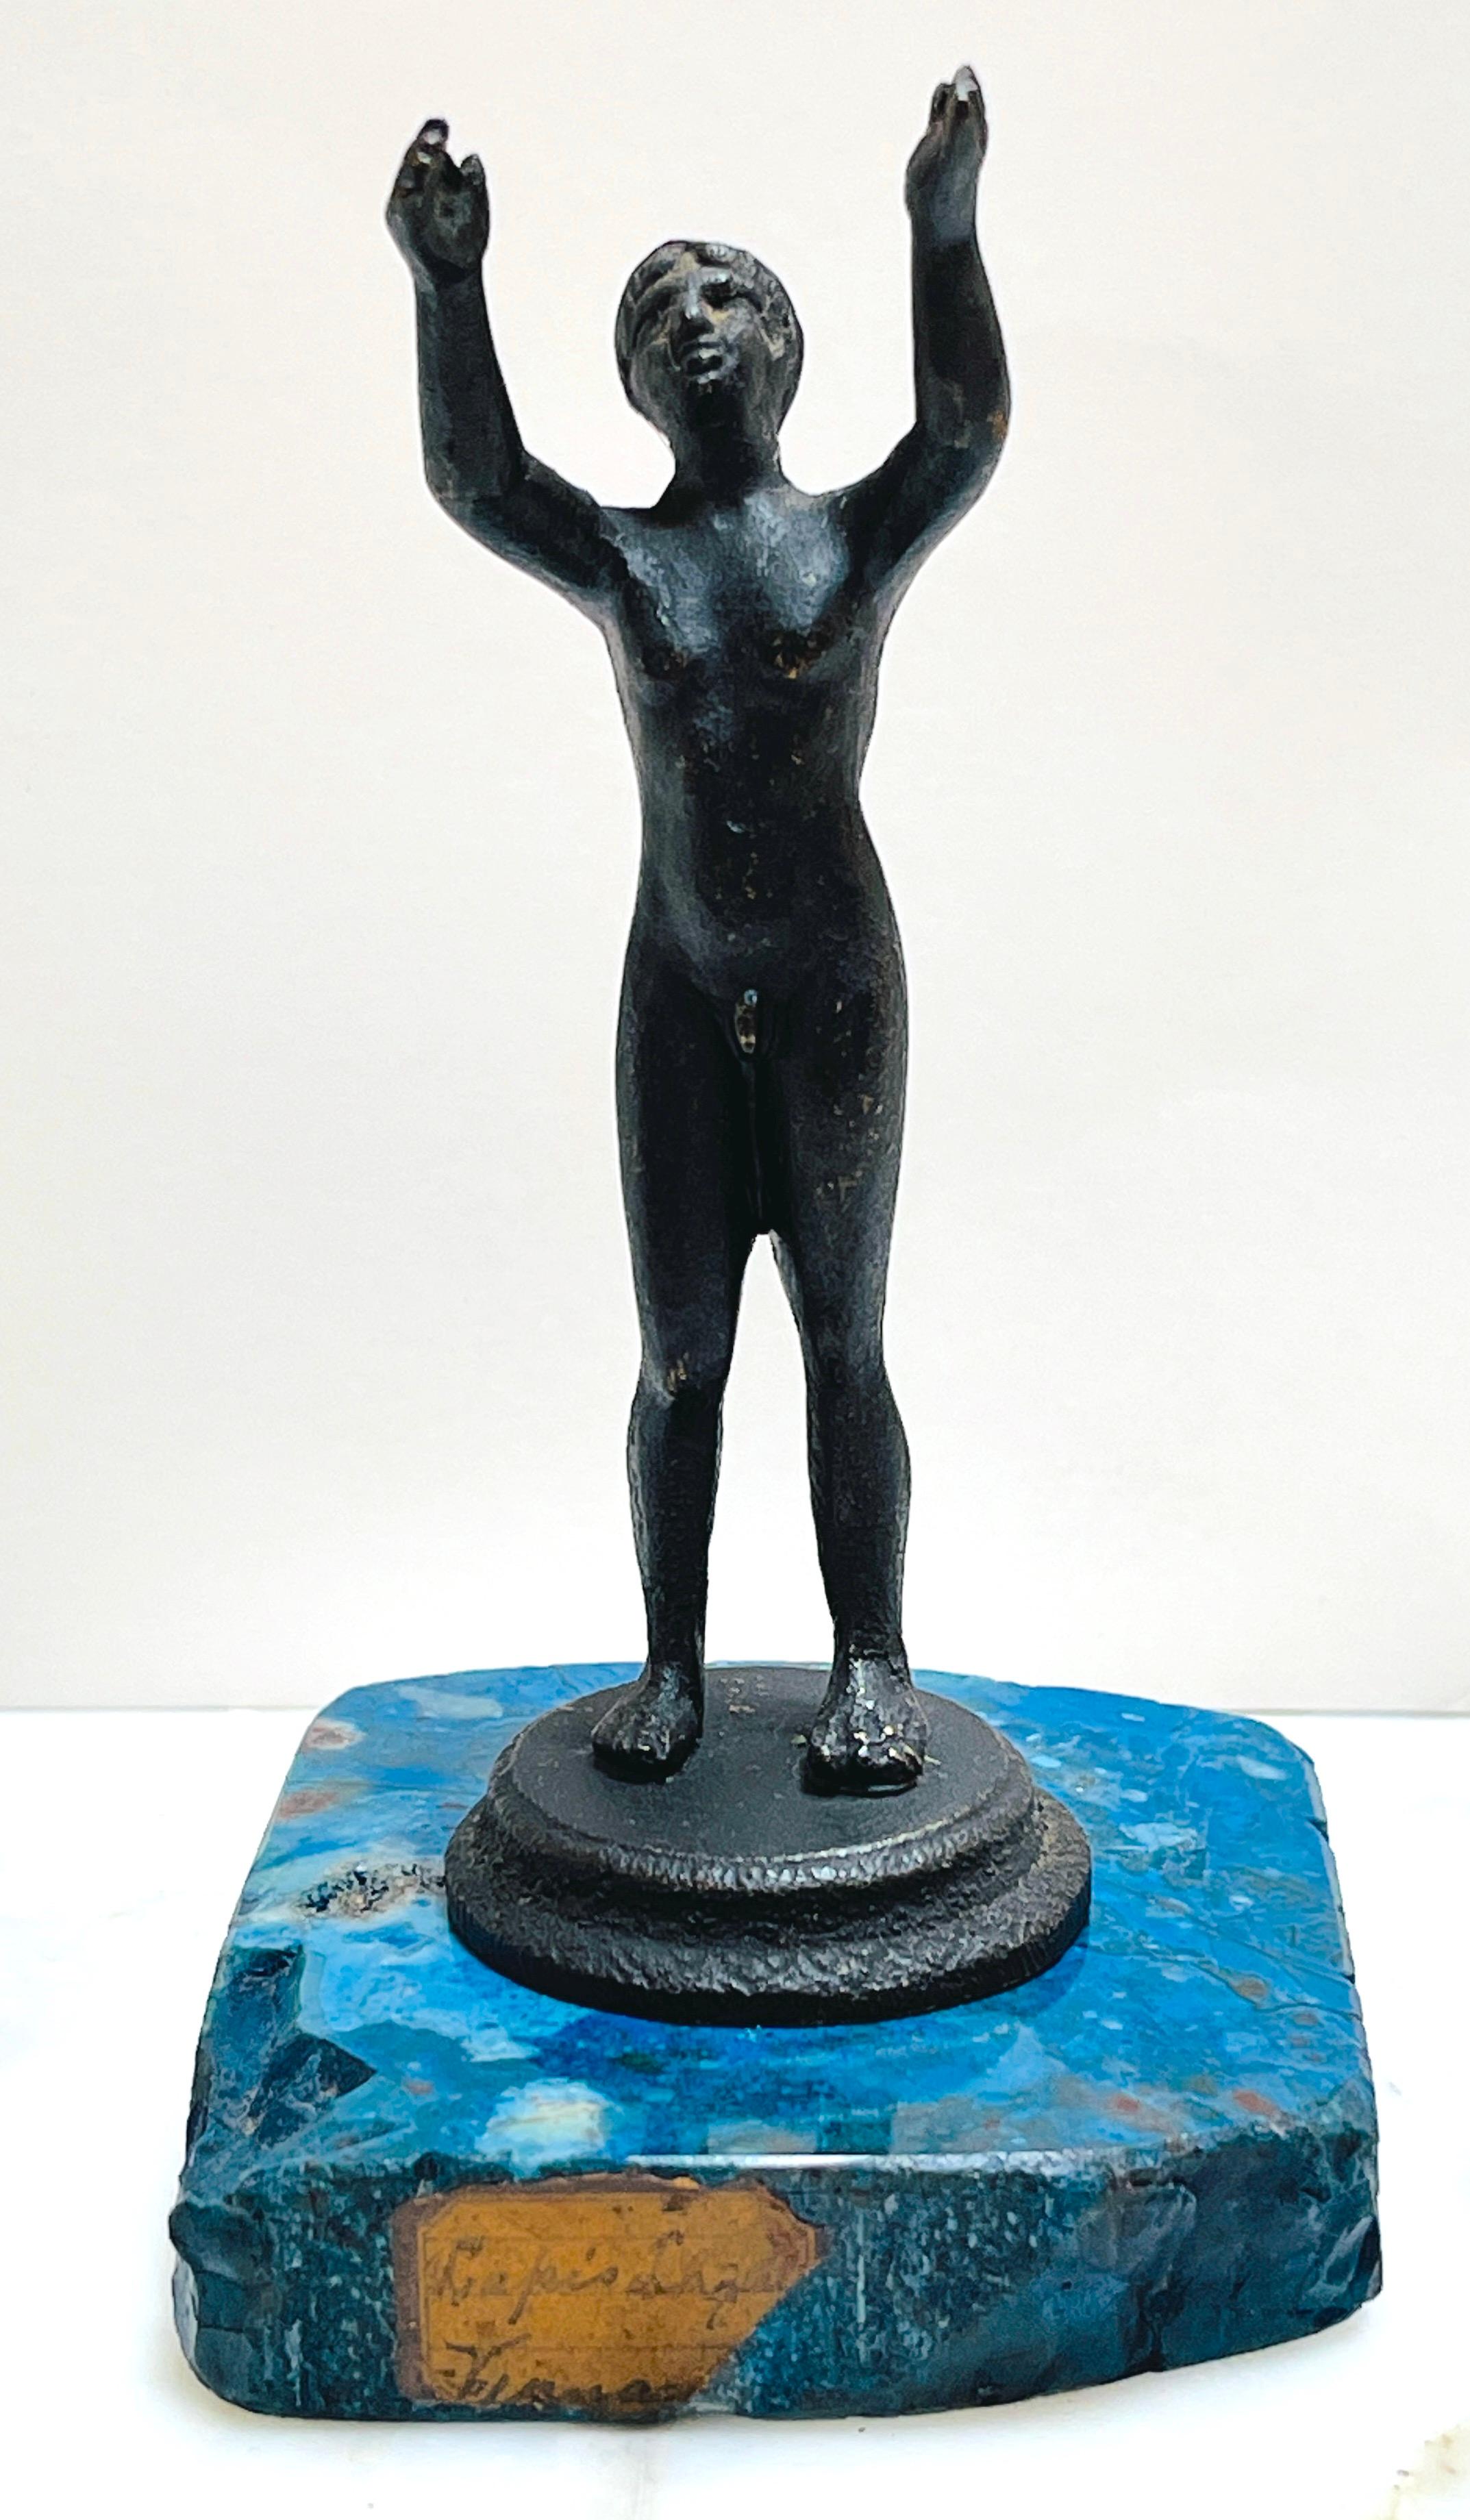 XIXe siècle Diminutif italien Grand Tour Athlète nu en bronze sur socle en lapis-lazuli
Italie, Attribué à la fonderie de Naples, vers 1875
Cette sculpture italienne en bronze du XIXe siècle, attribuée à la fonderie de Naples, est un exemple